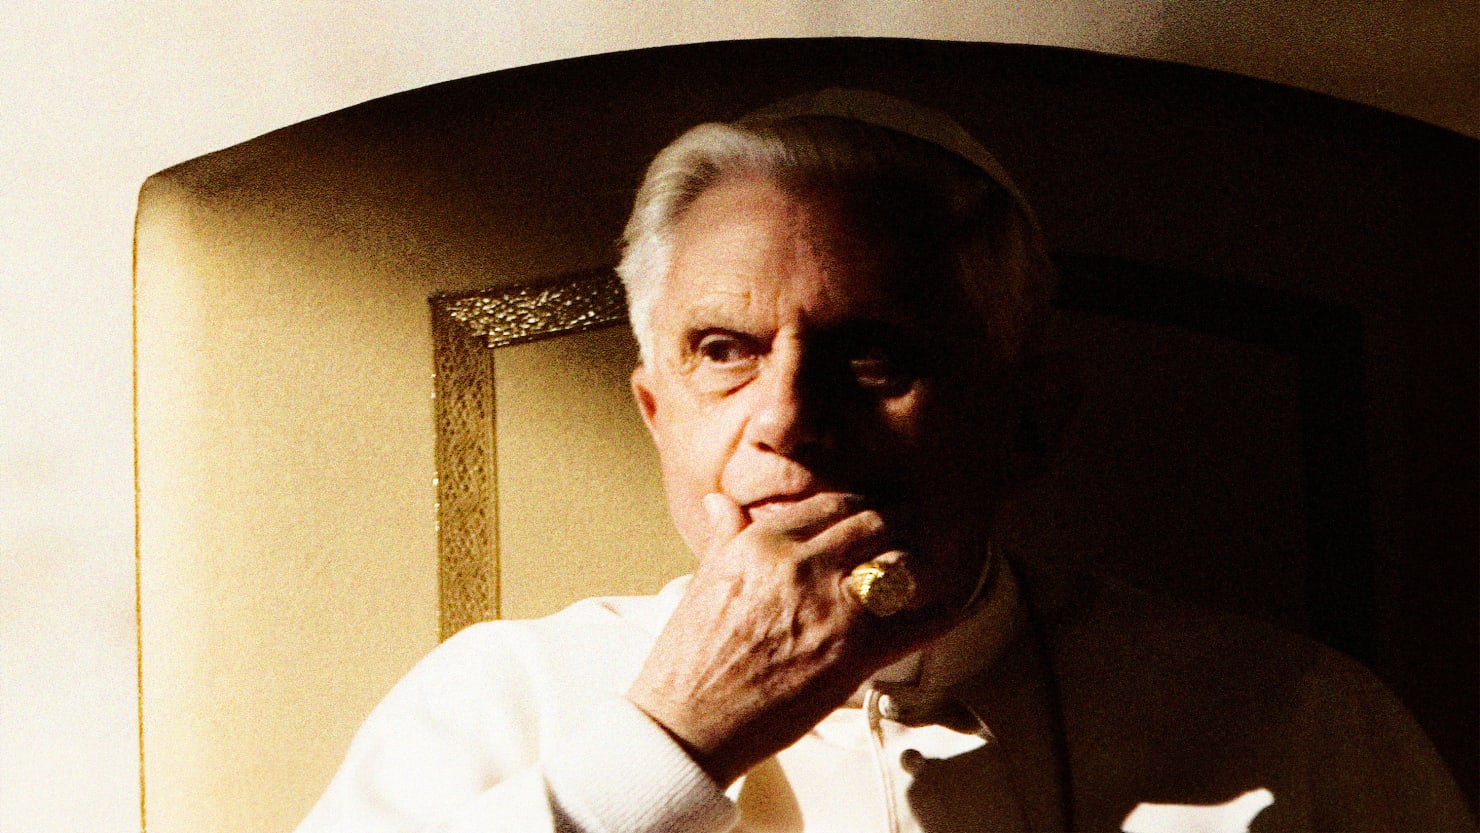 El Papa Benedicto XVI fue un pontífice de la ley y el orden, que fracasó como reformador